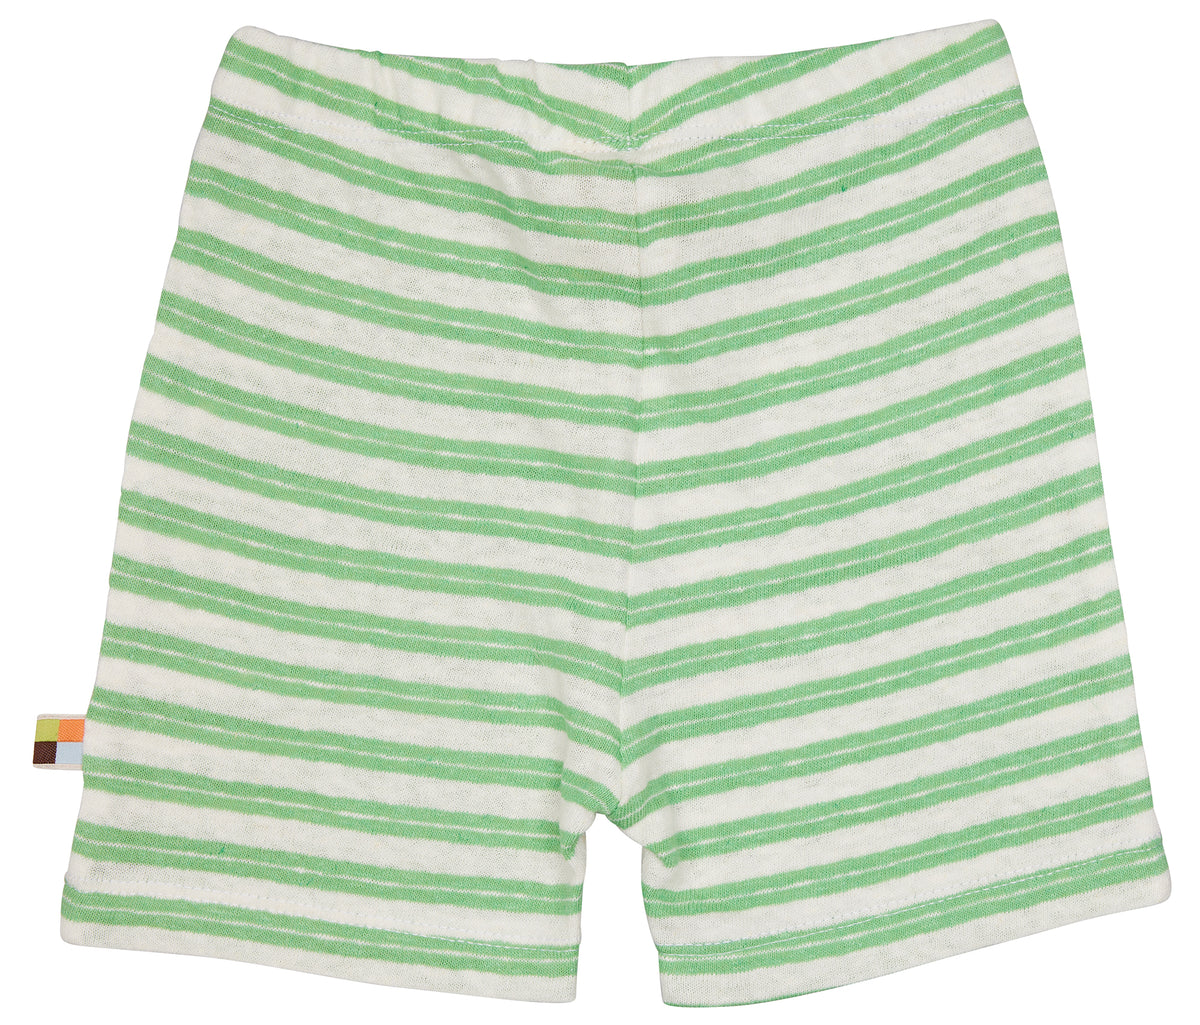 Shorts in grün/weiss gestreift von loud+proud